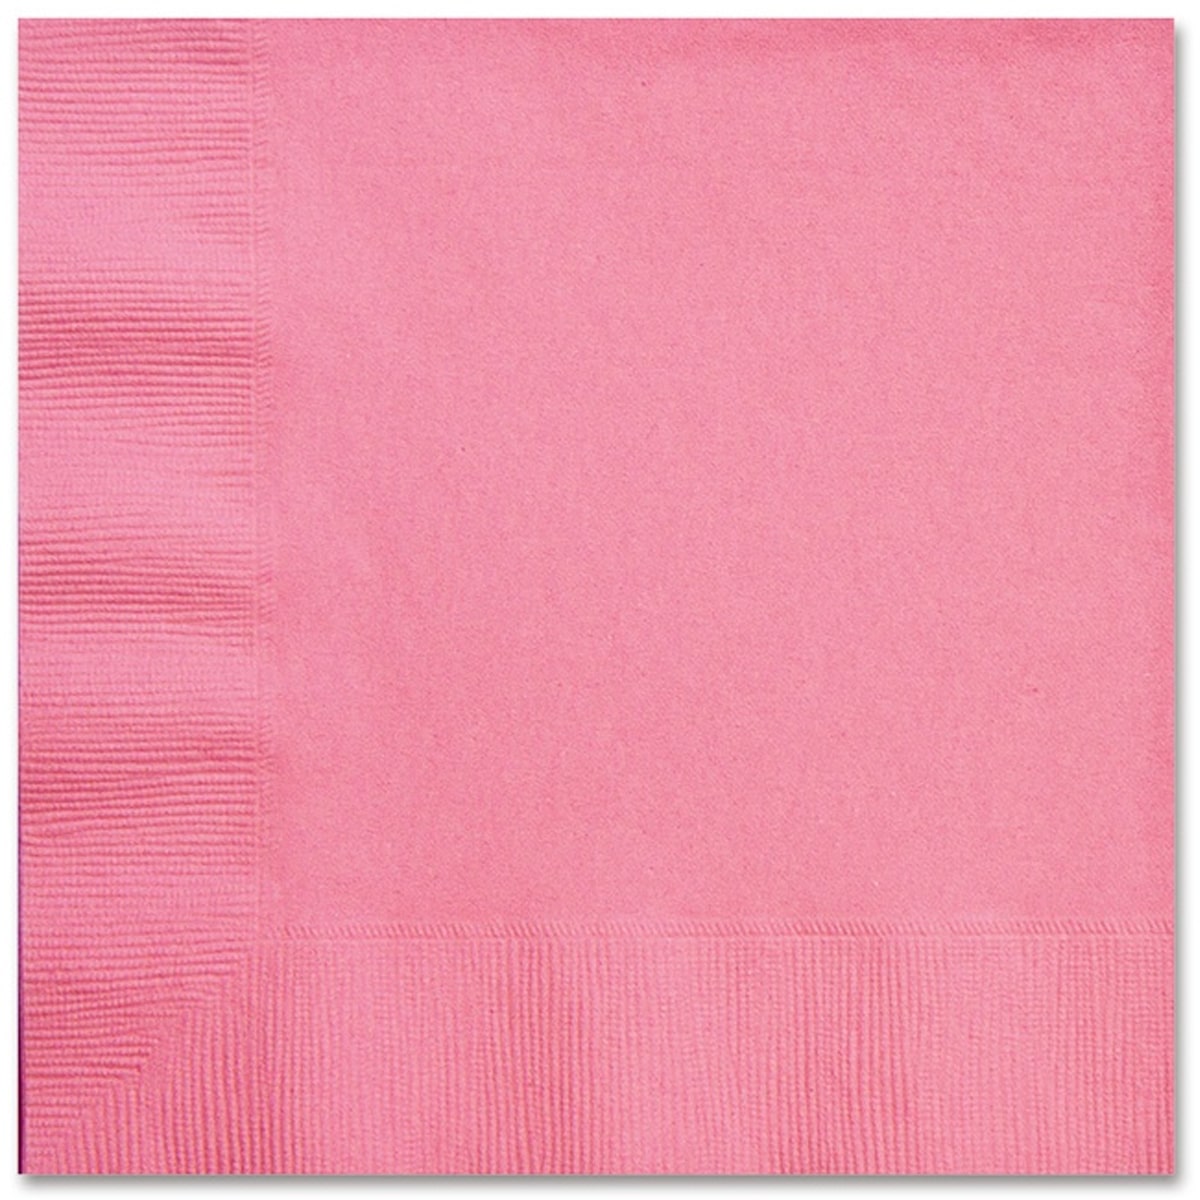 1502-1335 Салфетка Pink 33см 16шт/А